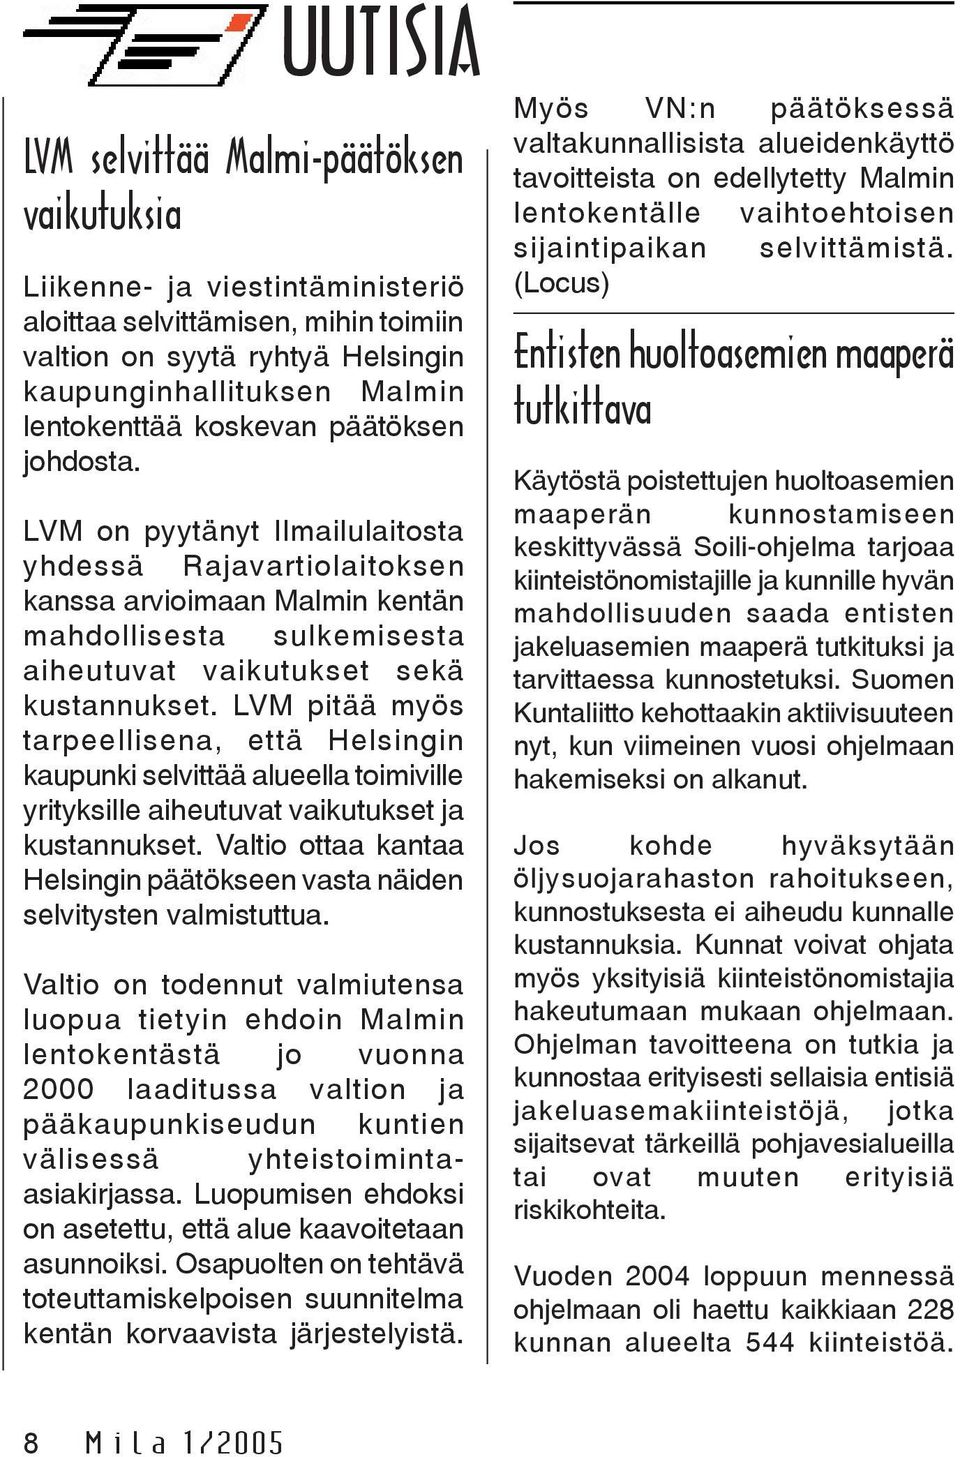 LVM pitää myös tarpeellisena, että Helsingin kaupunki selvittää alueella toimiville yrityksille aiheutuvat vaikutukset ja kustannukset.